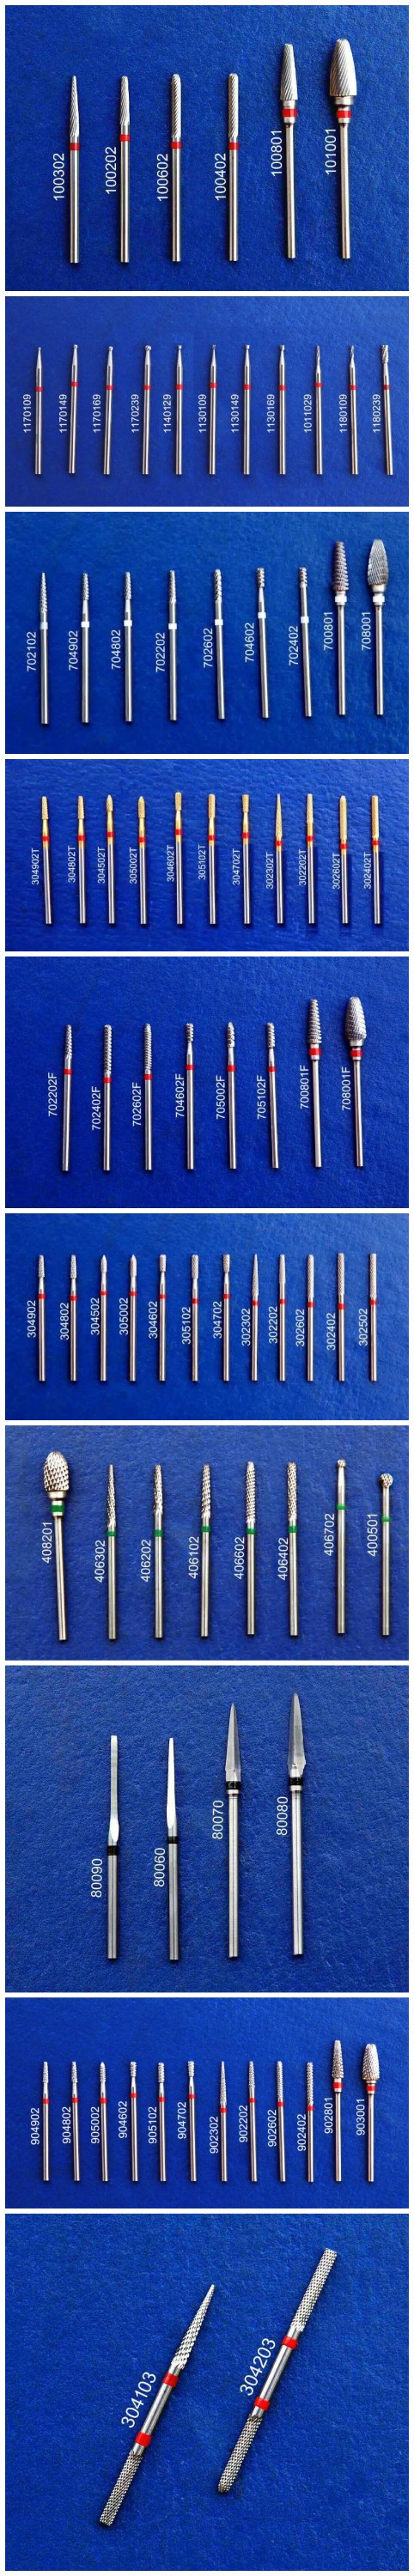 Nail bits Electric nail drill kits hot sale core drill bits made in China